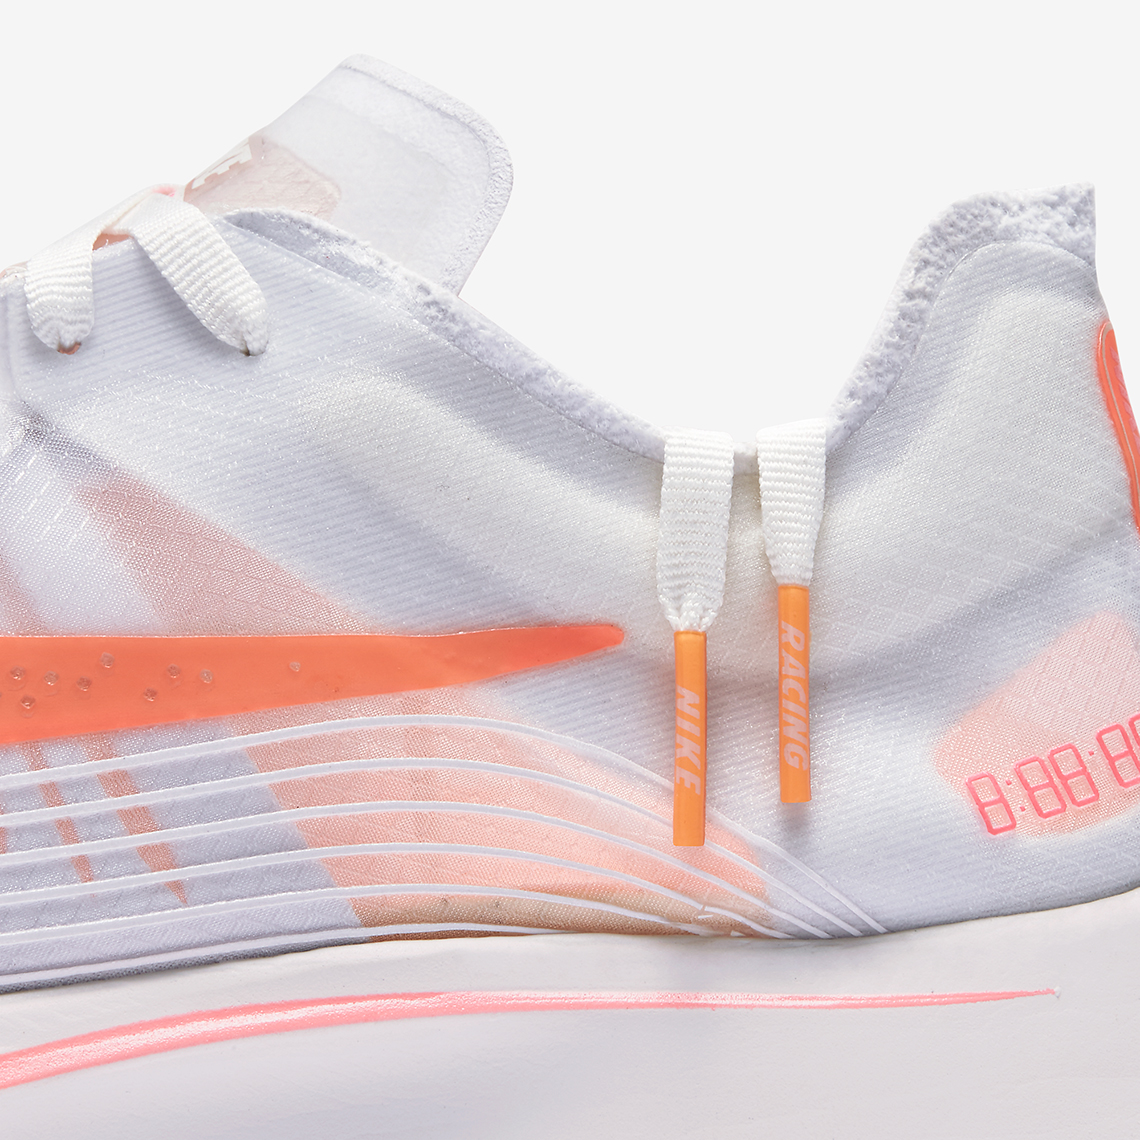 Nike Zoom Fly Sp Neon Orange Release Info 6